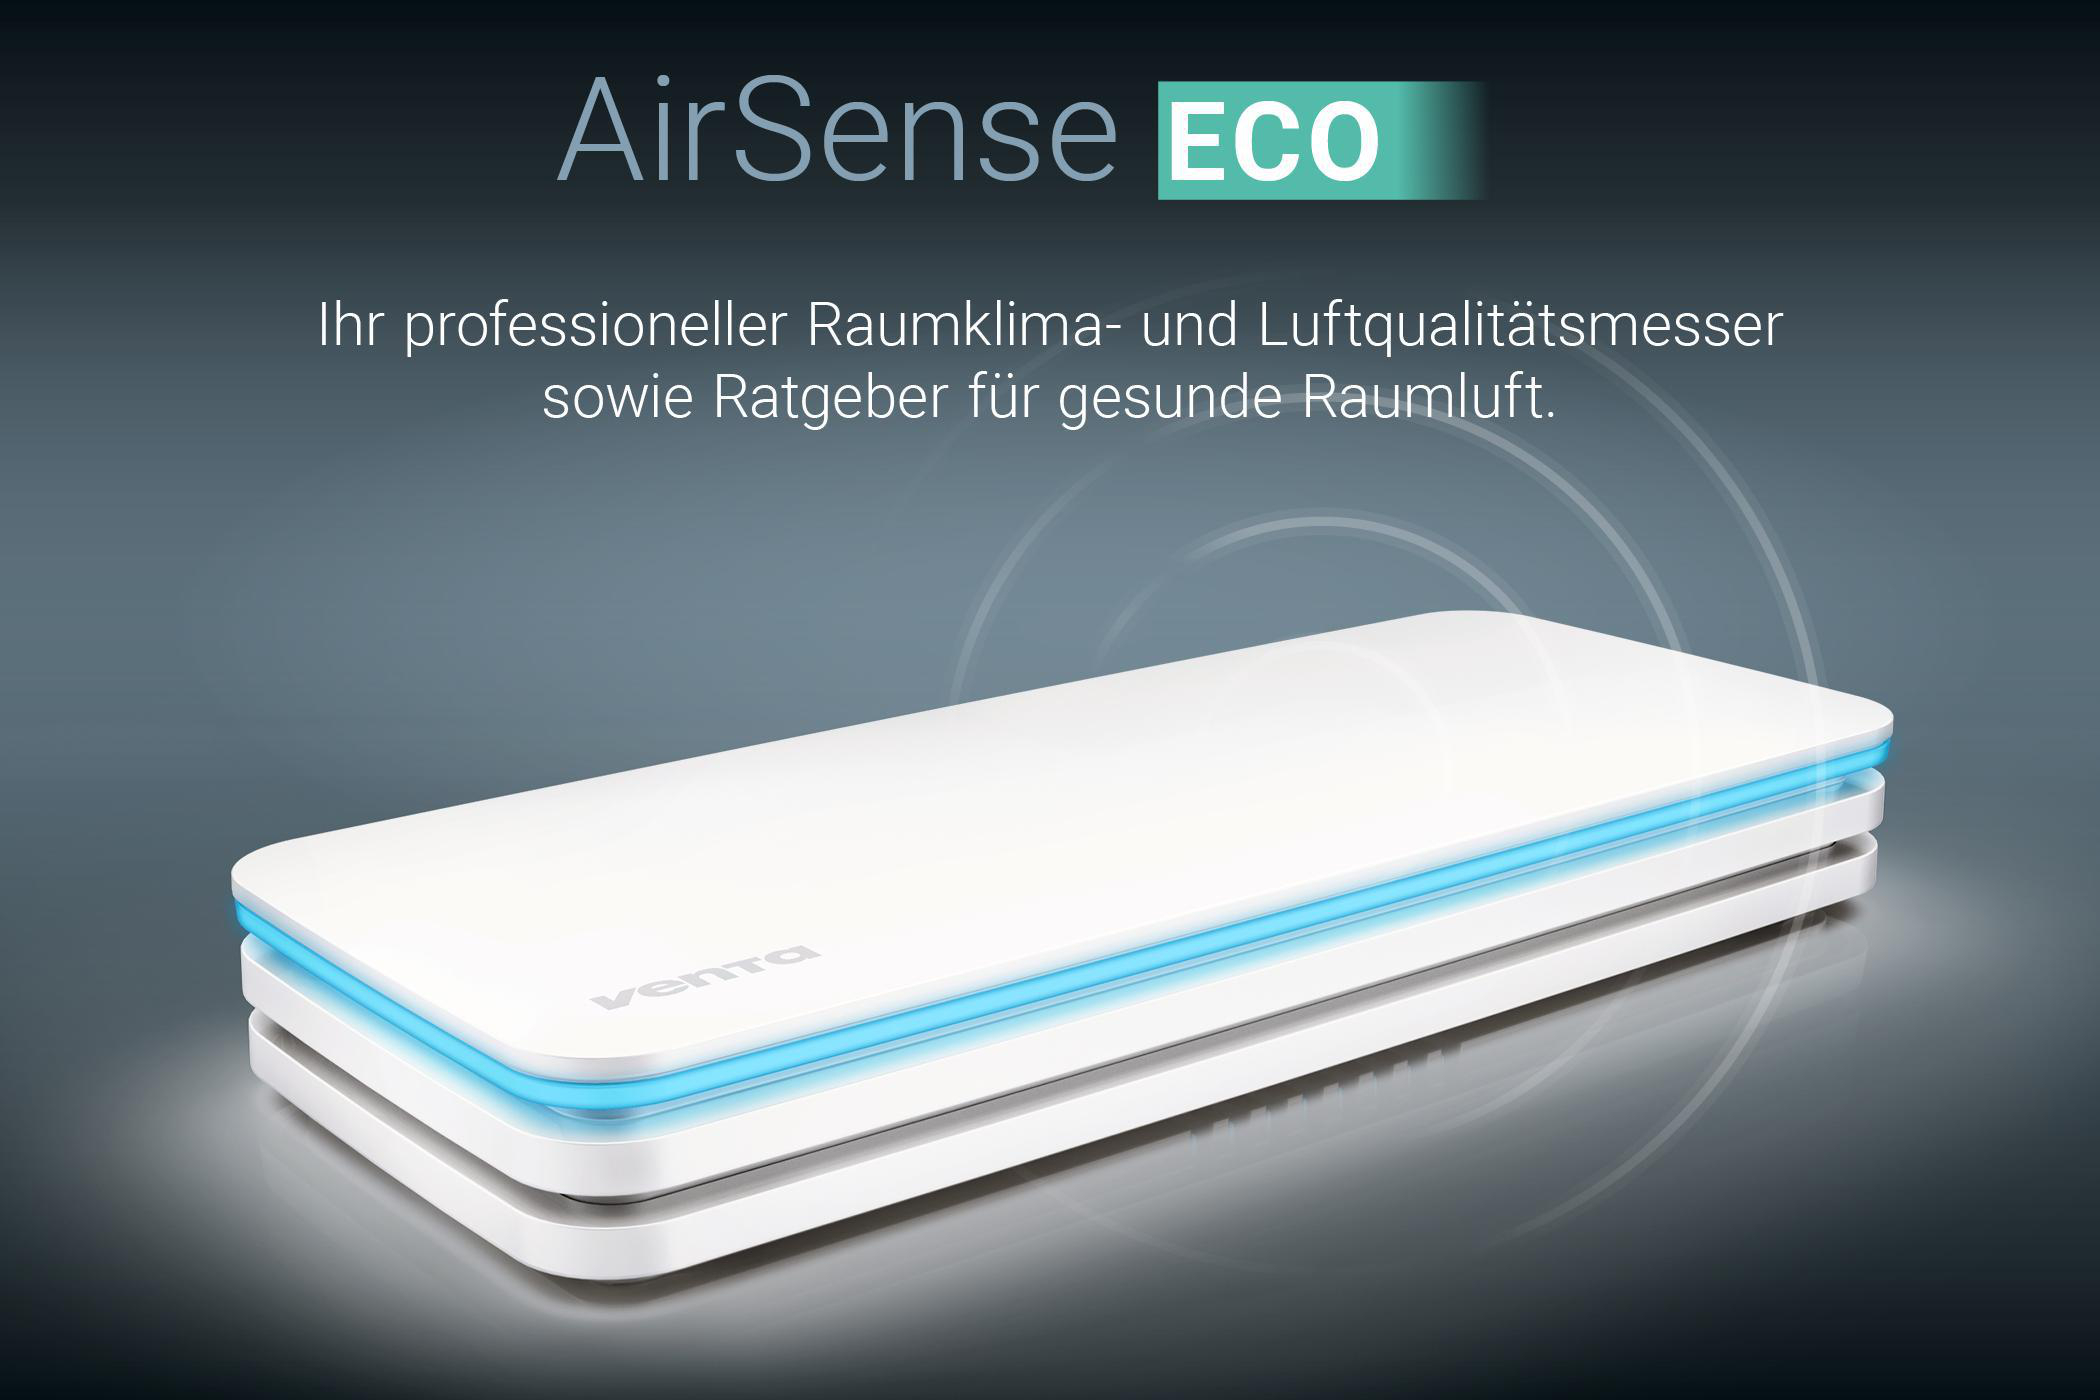 AirSense VENTA AS100 Raumklima- und ECO Luftqualitätsmesser